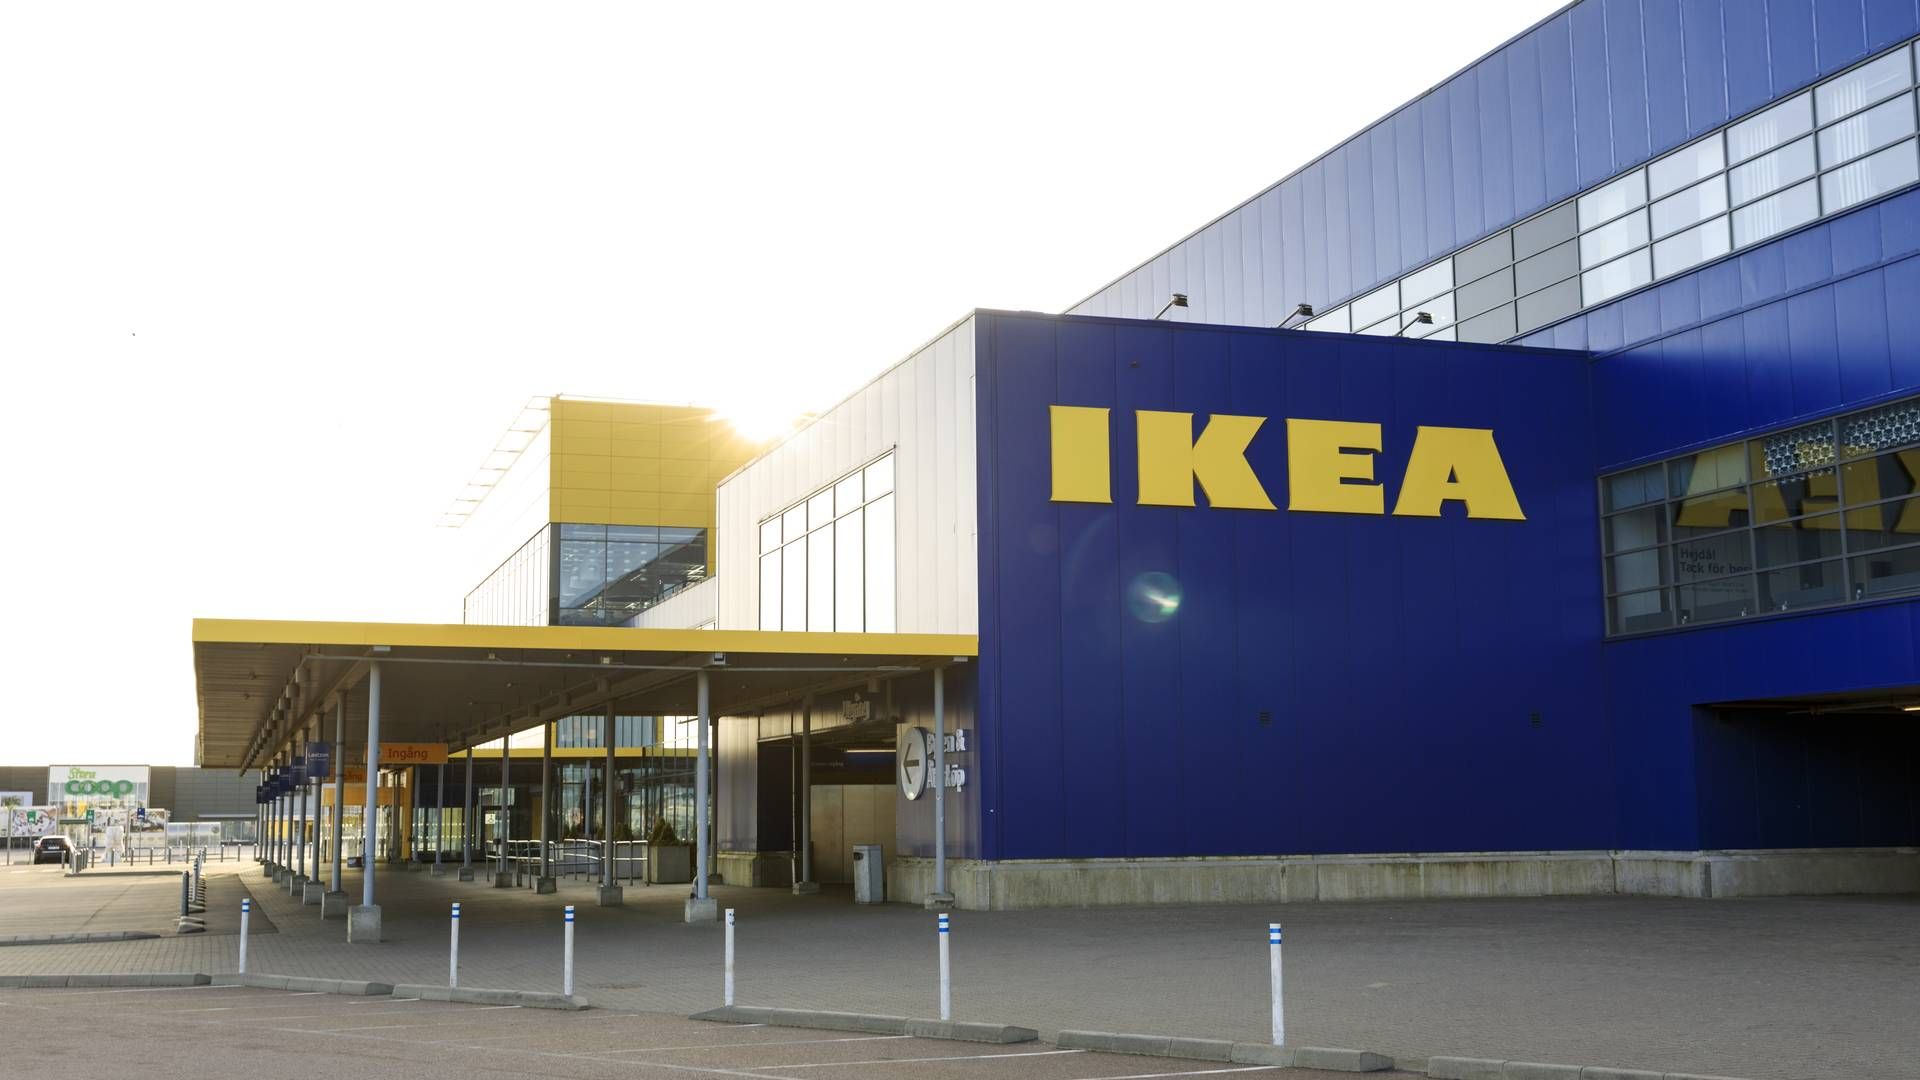 Det belgiske parti Vlaams Belang har fremlagt "IKEA-planen", som er en politisk kampagne mod indvandring. | Foto: IKEA